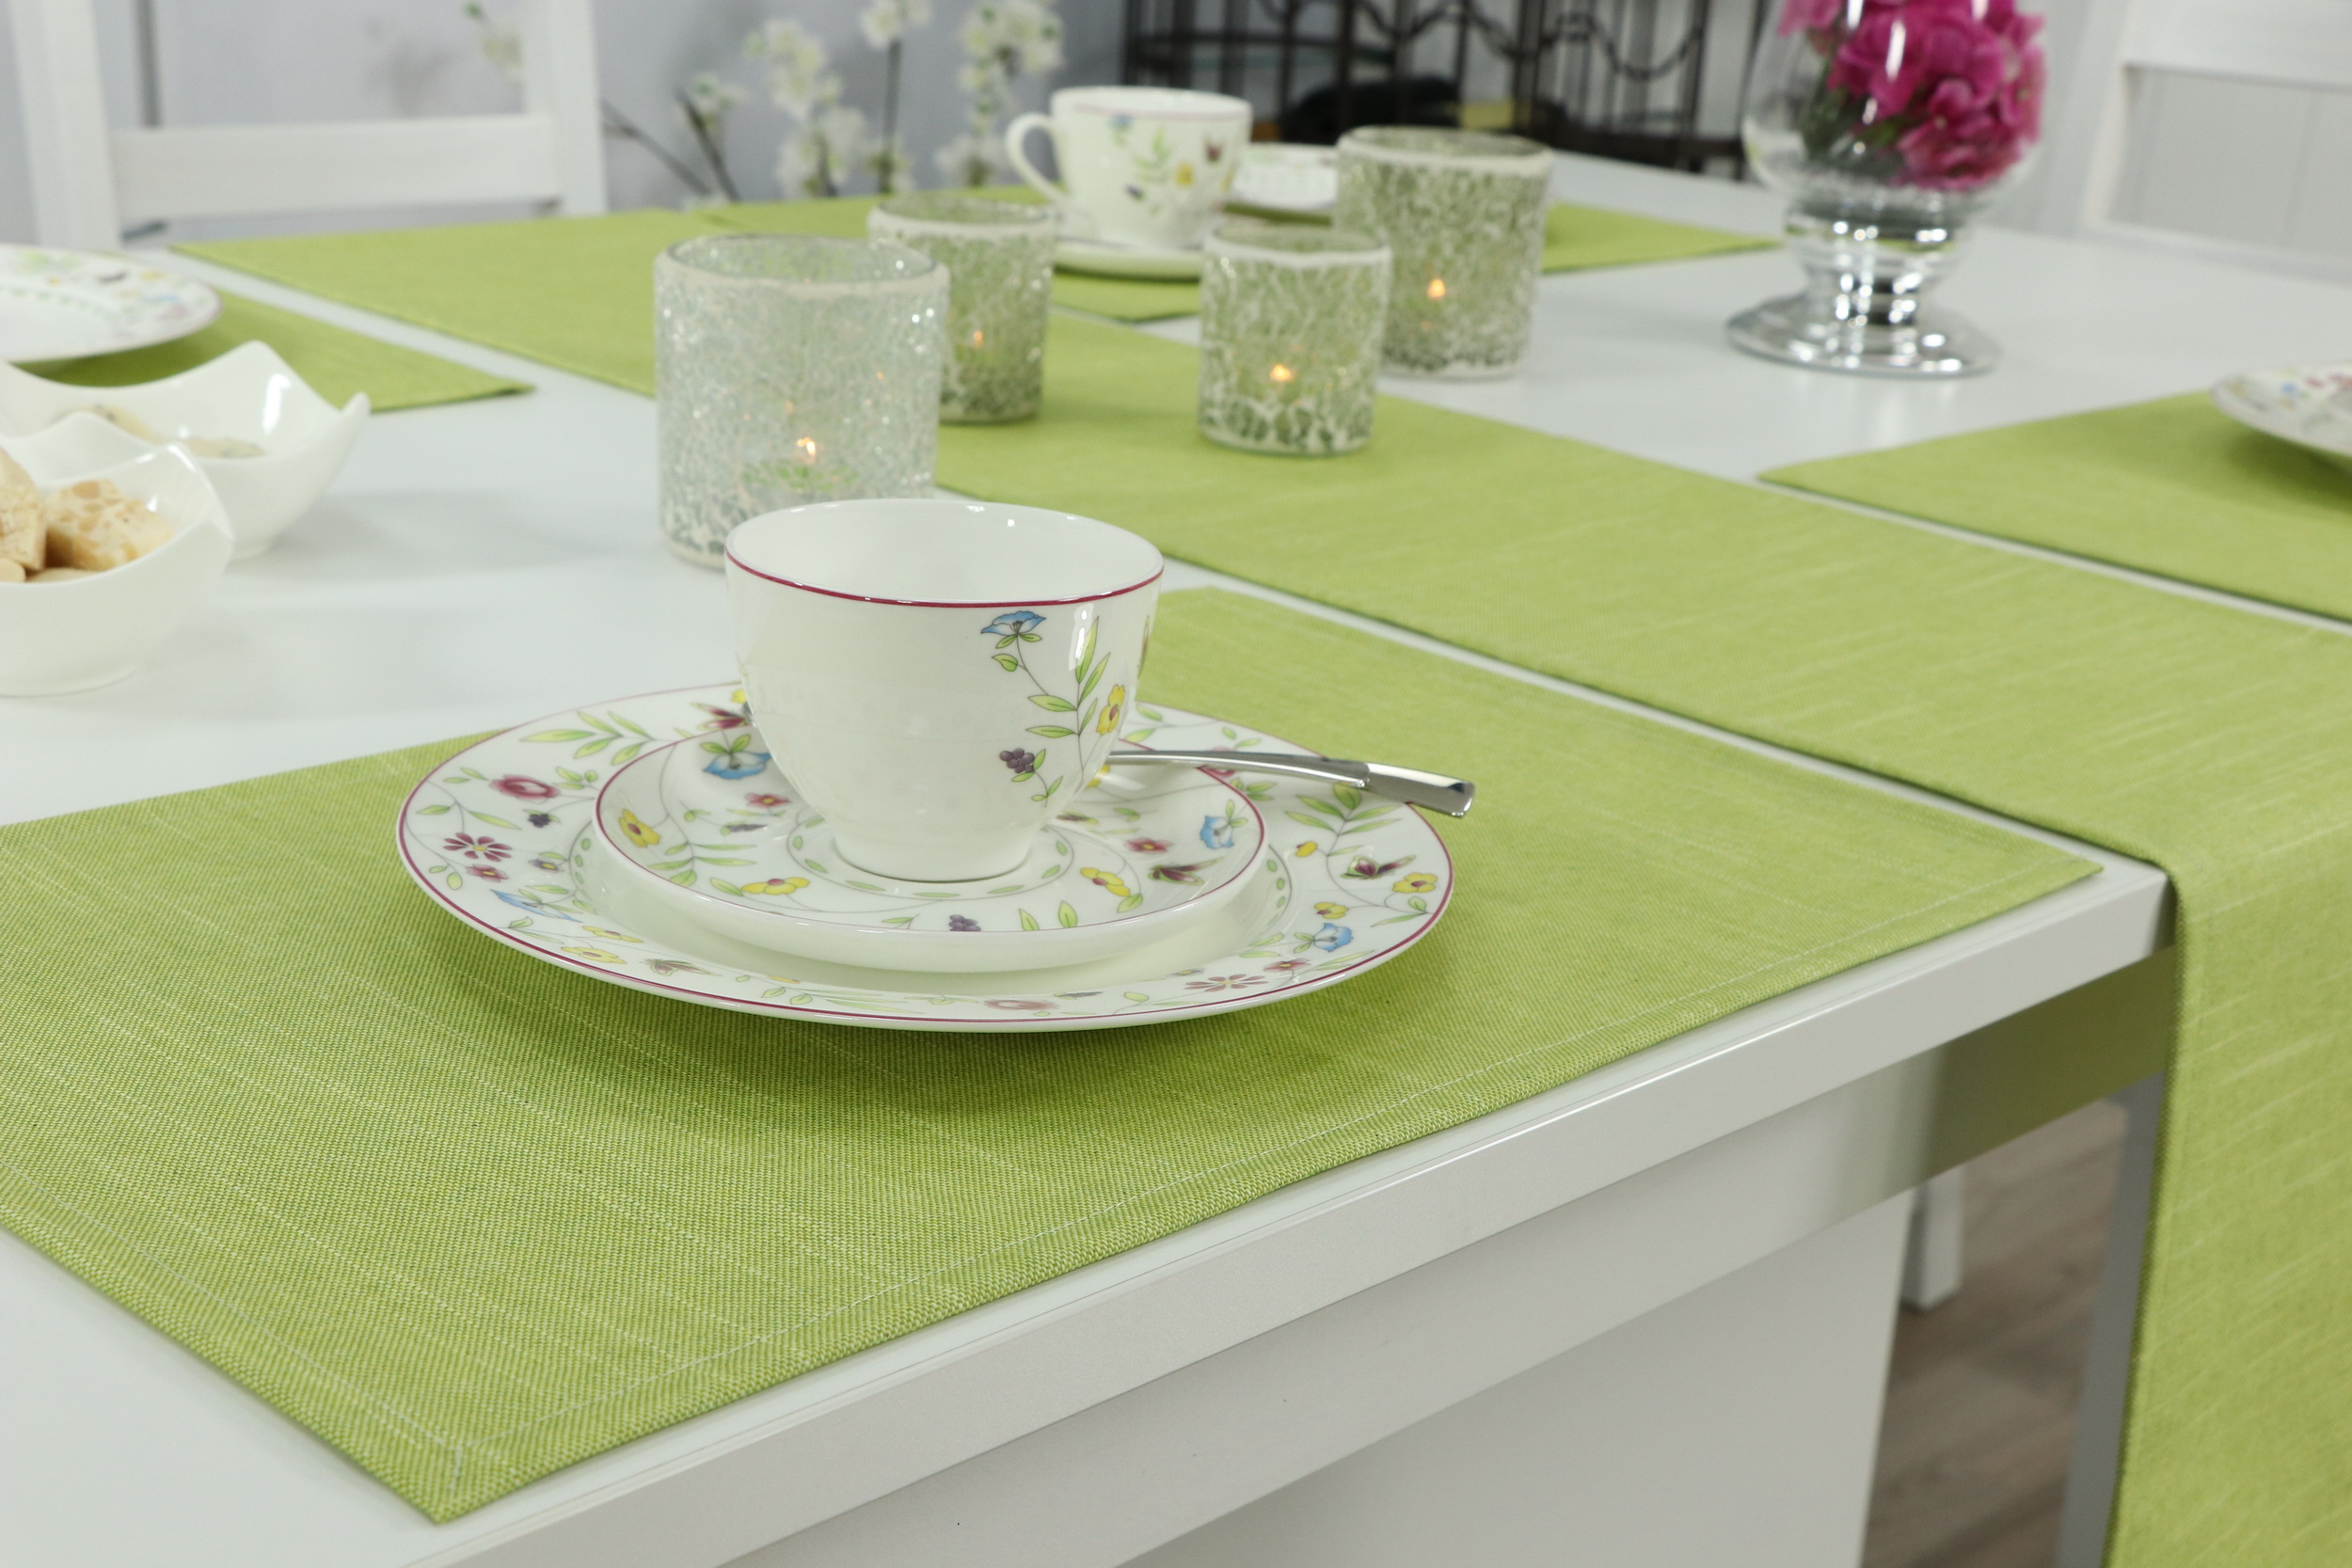 Tischdecke Mai-Grün abwaschbar: Abwischen und Tischdecken-Shop.de. so einfach! Markenqualität Es | ist sauber: Tischdecken TiDeko®